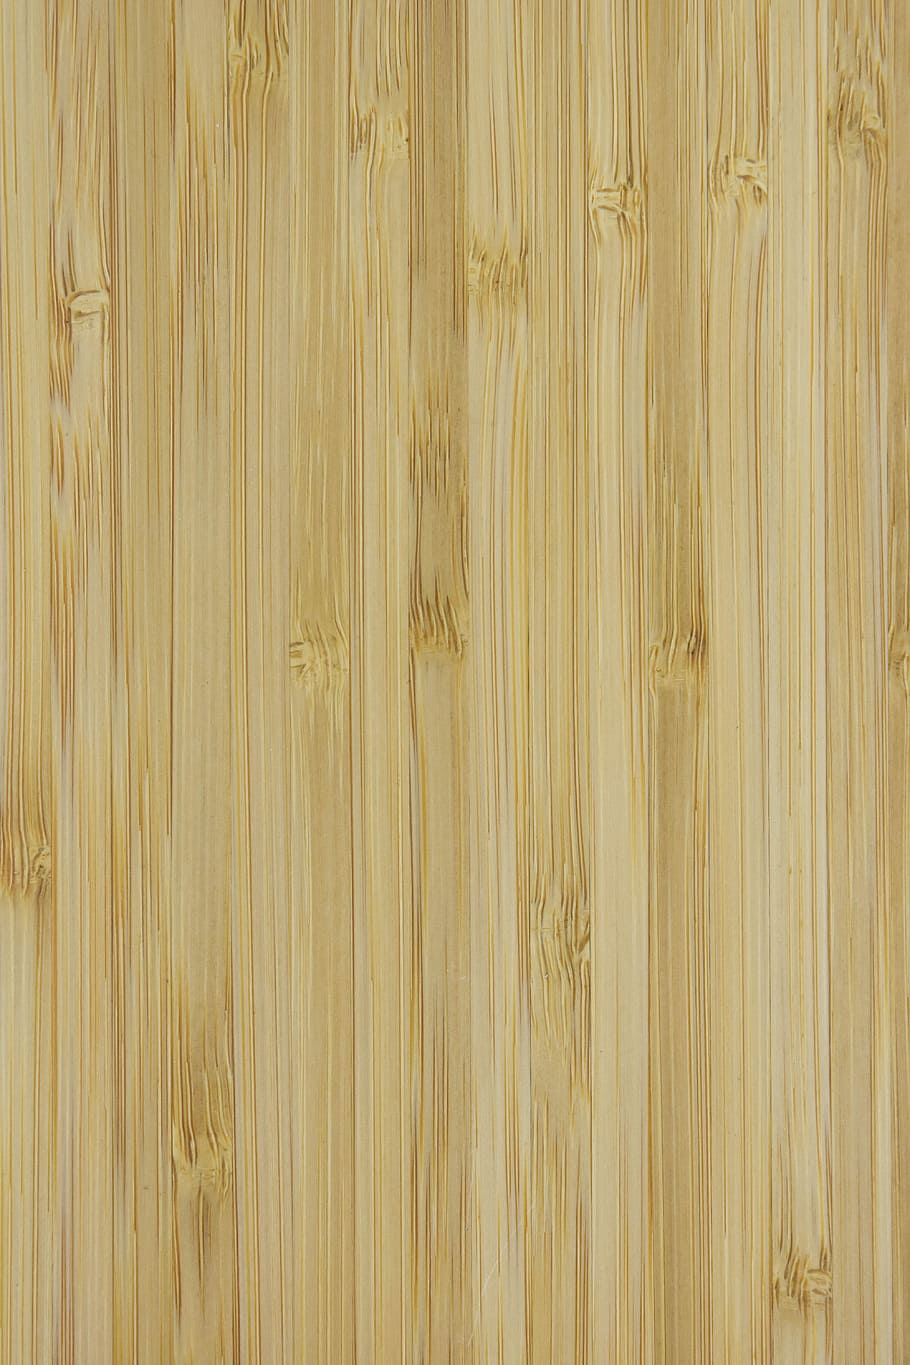 o plano de fundo, madeira, retrô, textura, placas, padrão, a estrutura do, plano de fundo, papel de parede, textura de madeira